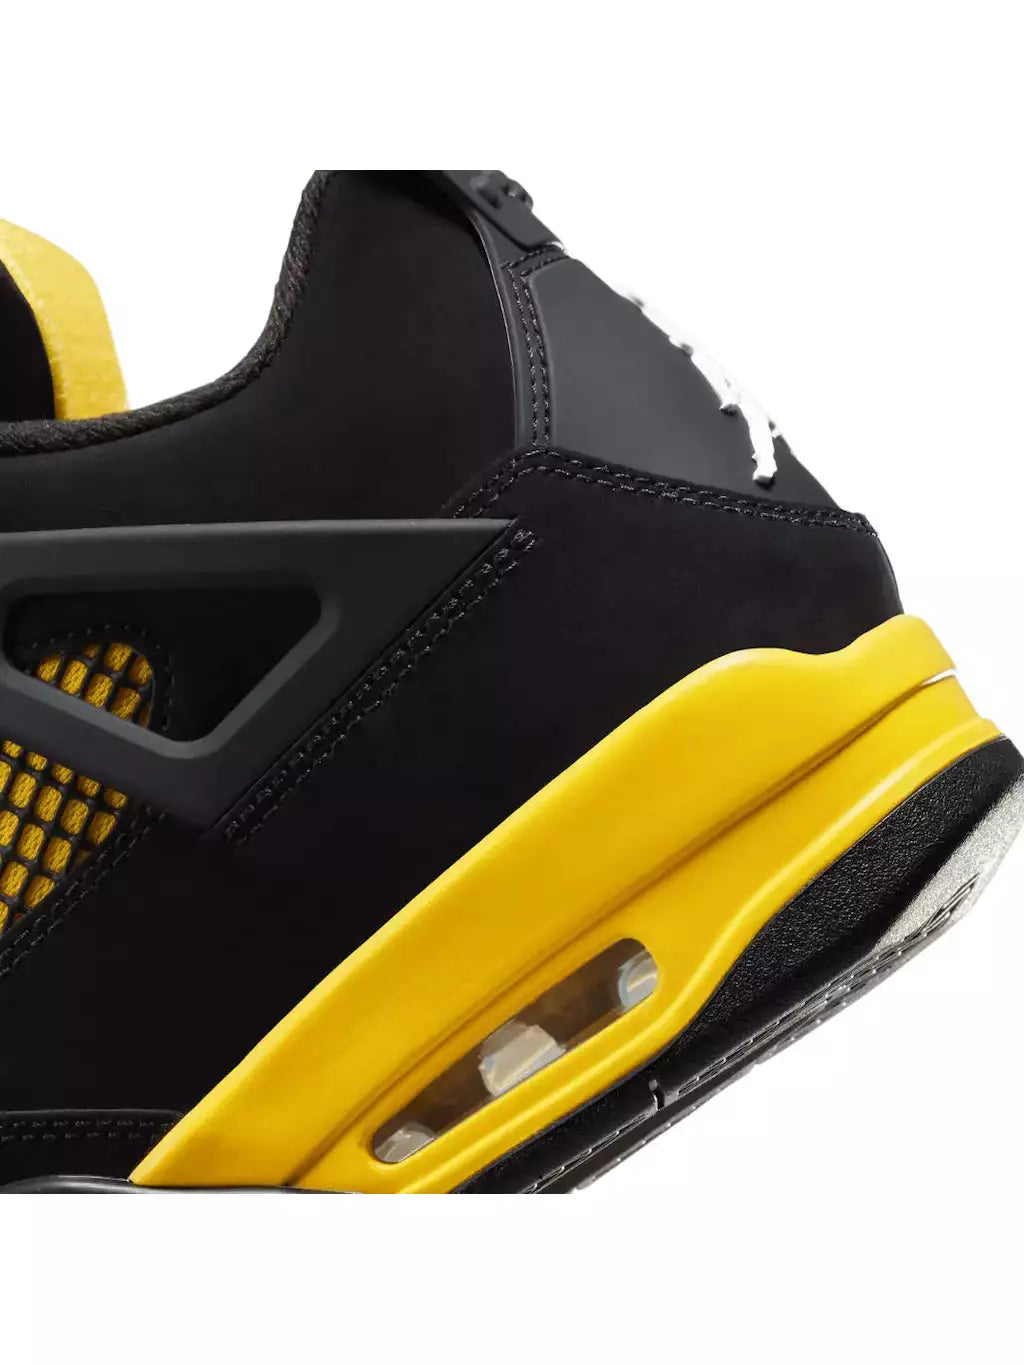 Nike Air Jordan 4 Yellow Thunders